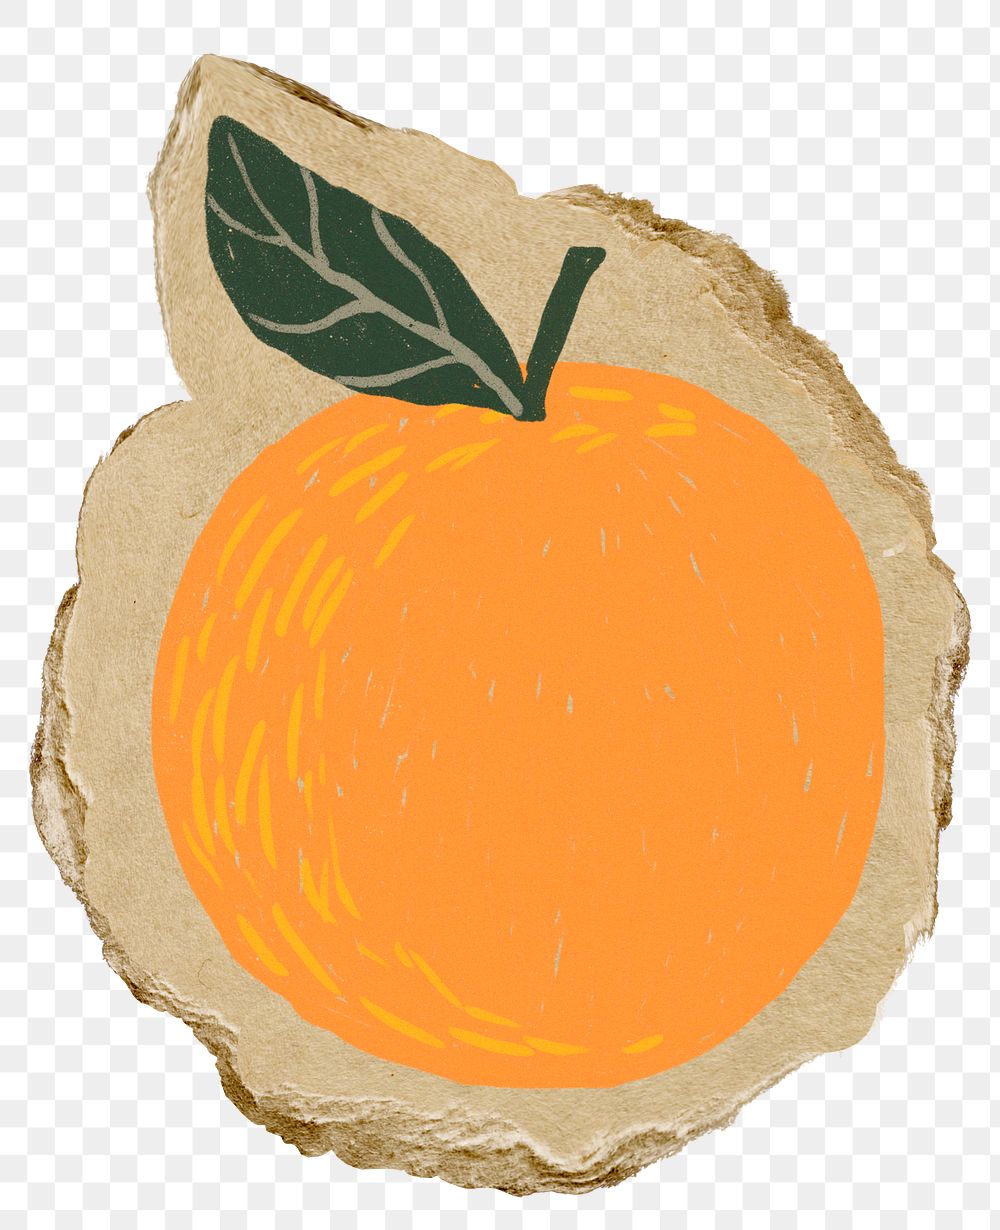 Orange doodle png sticker, transparent background